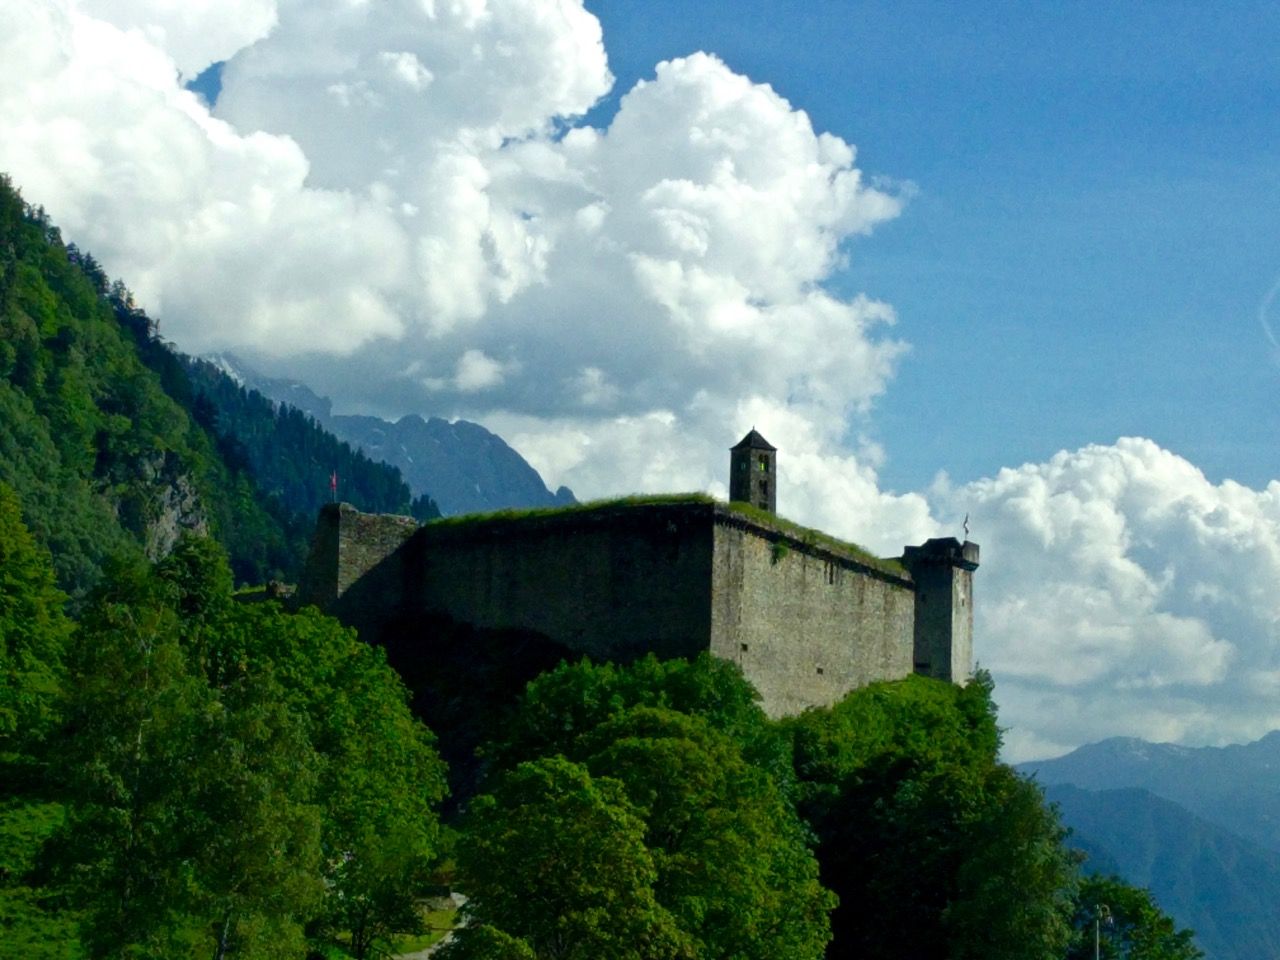 A castle on a mountain near the autobahn.